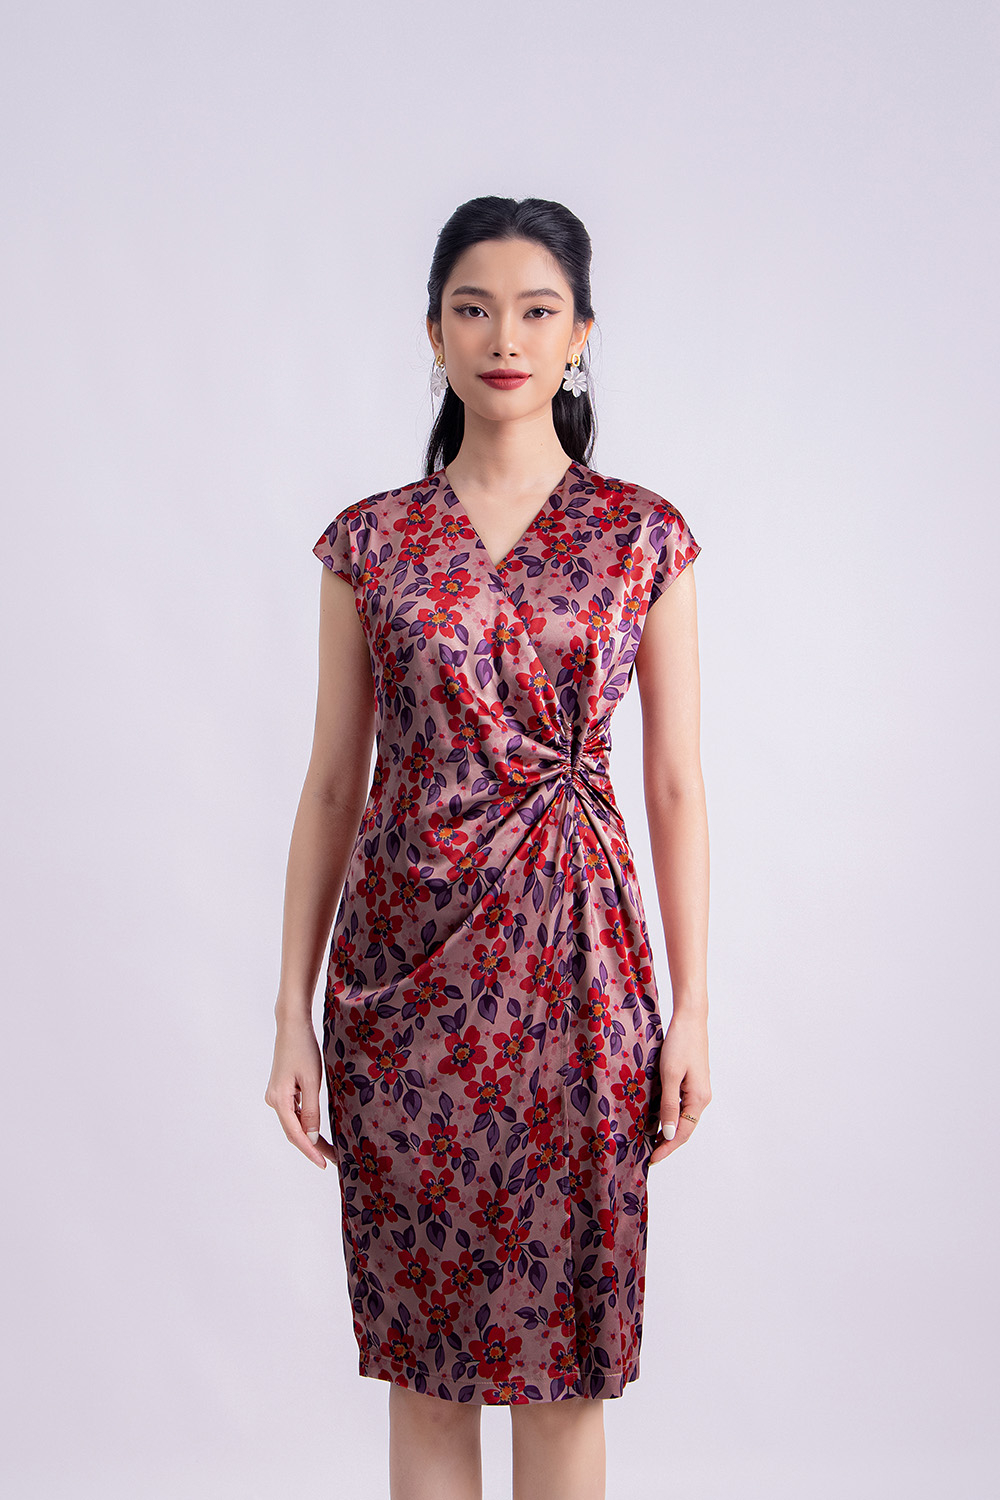 Đầm hoa chữ A xoắn ngực cổ tim KK118-15 | Thời trang công sở K&K Fashion